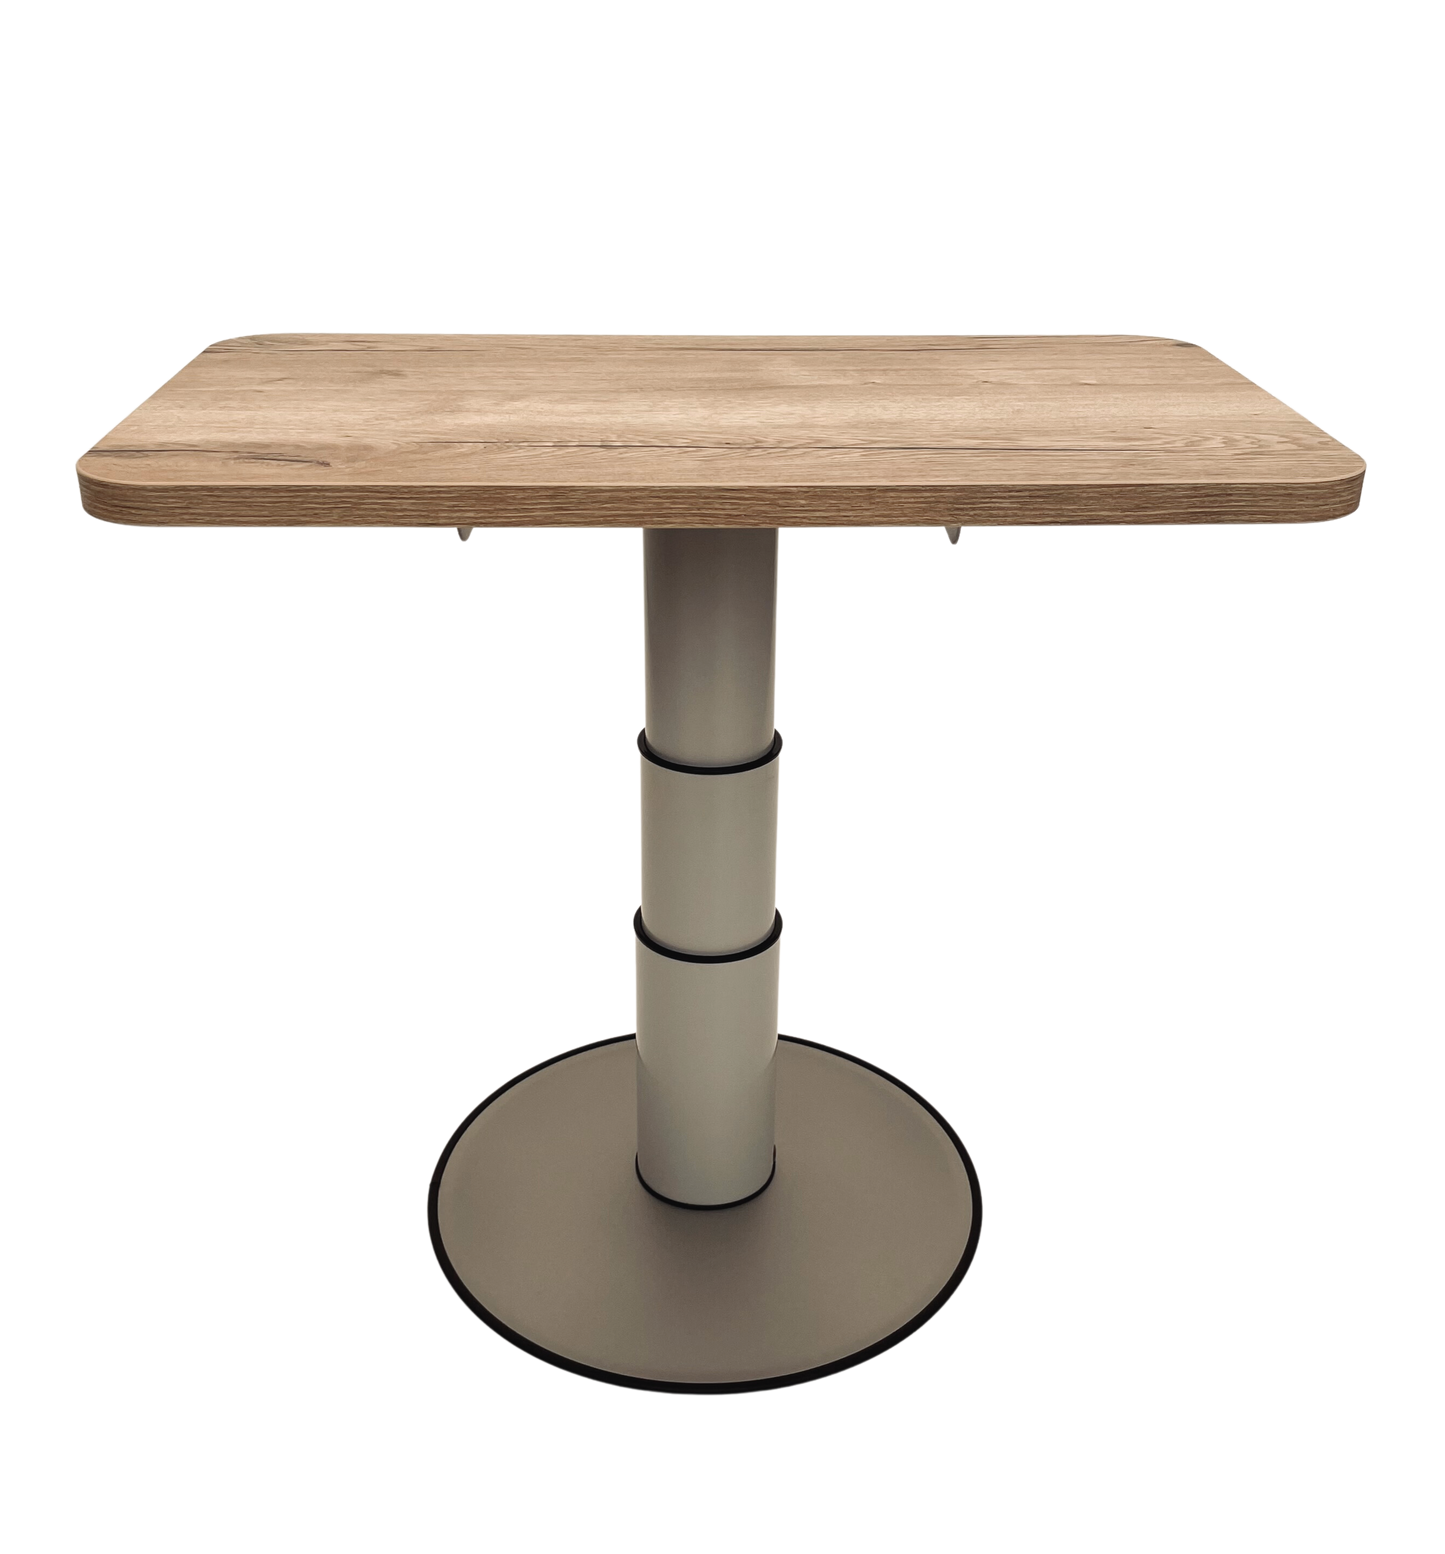 Motorhome table height adjustable